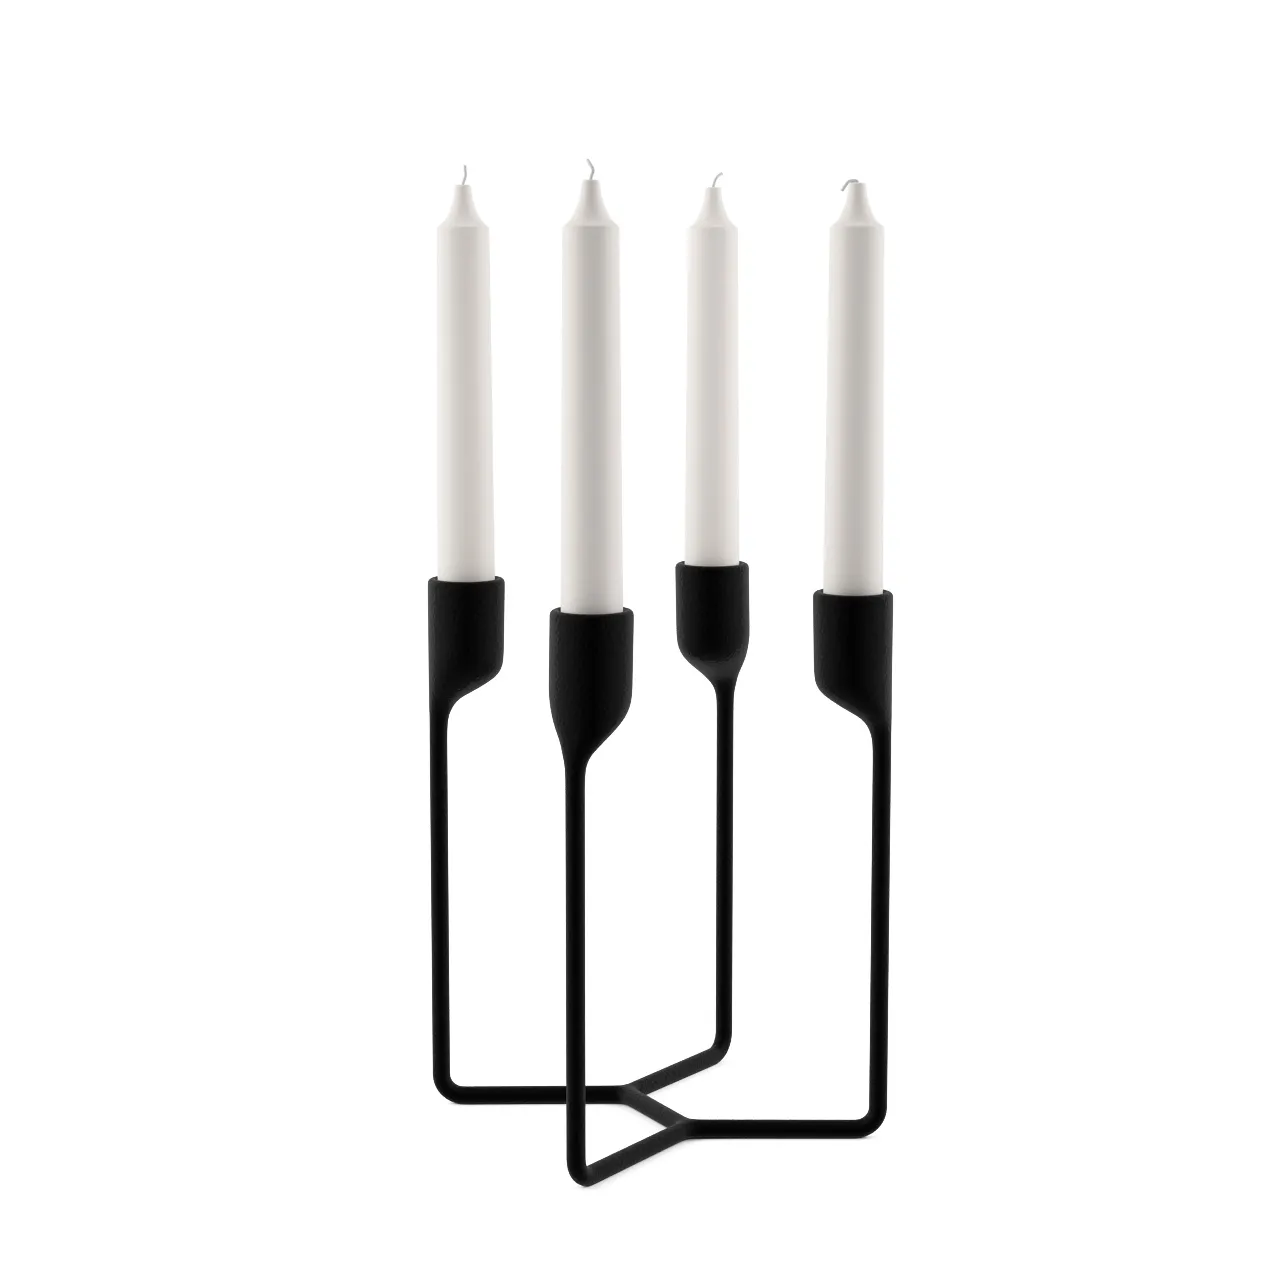 Accessories – heima-4-armed-candlestick-by-normann-copenhagen